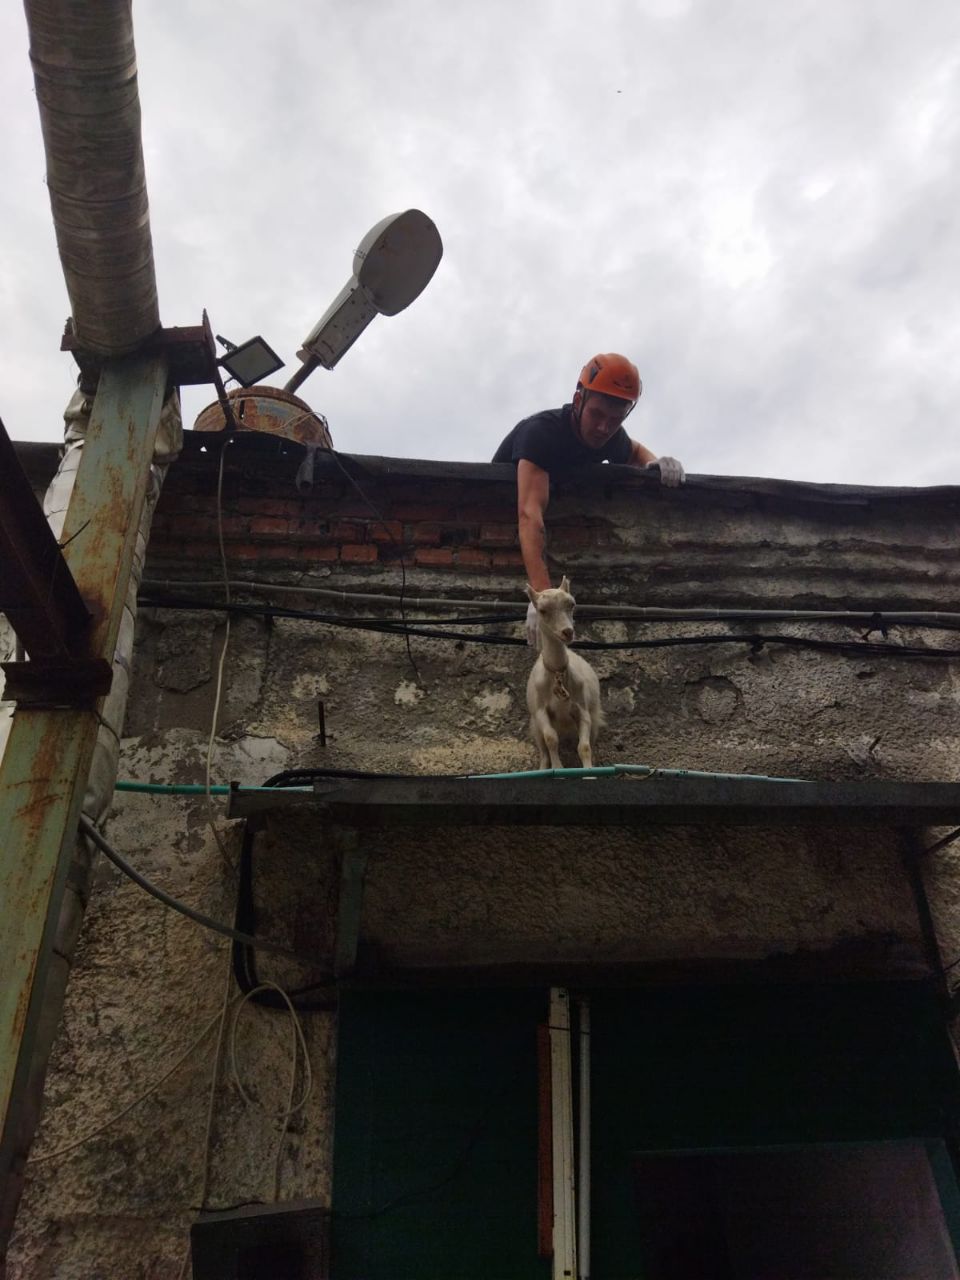 Жители Новороссийска удивились козе, забравшейся на здание 